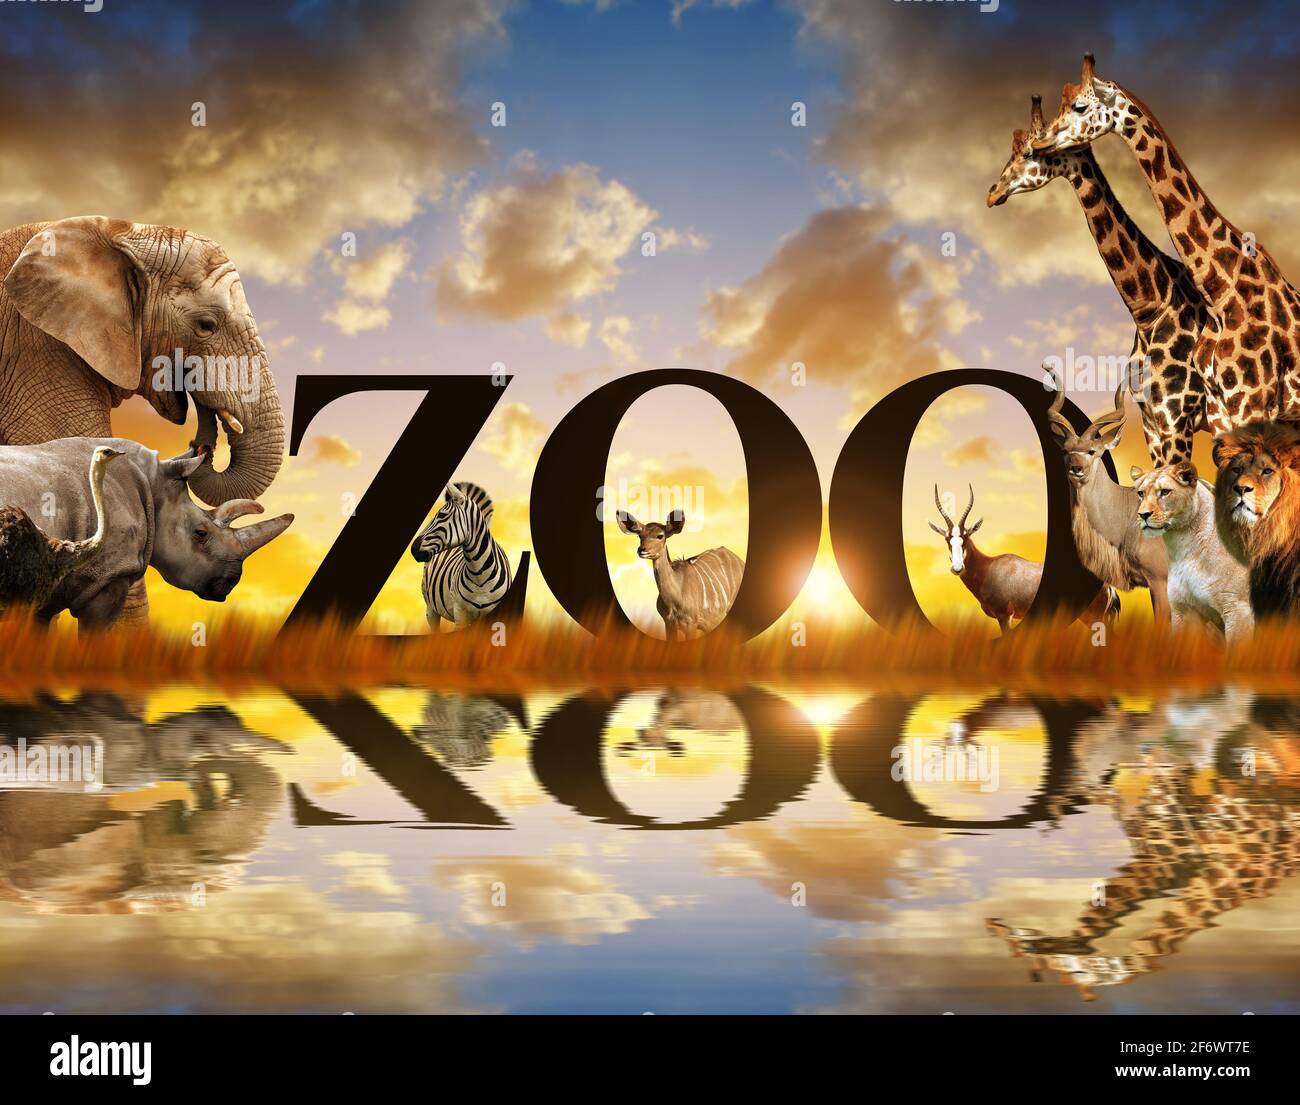 Wort Zoo und afrikanische Tiere. Elefant, Giraffe, Zebra, Löwe, Nashorn, kudu und Strauß auf der Savanne bei Sonnenuntergang. Stockfoto